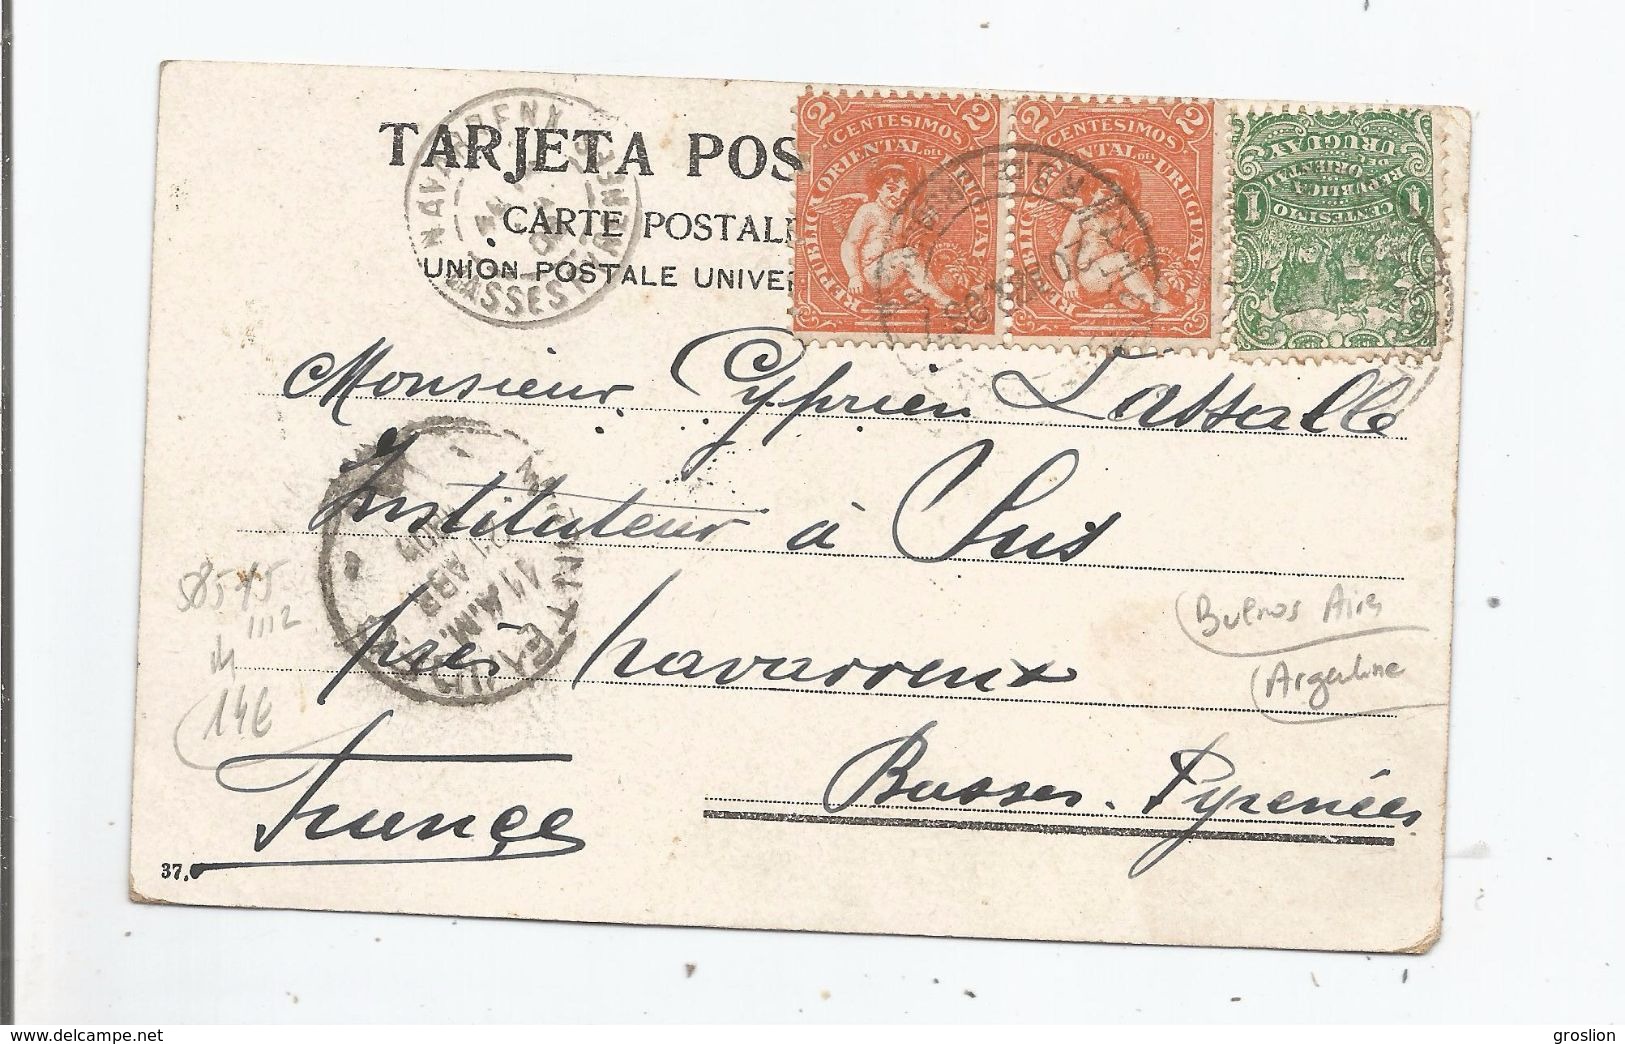 BUENOS AIRES ESCUETA SARMIENTO 1906 - Argentine